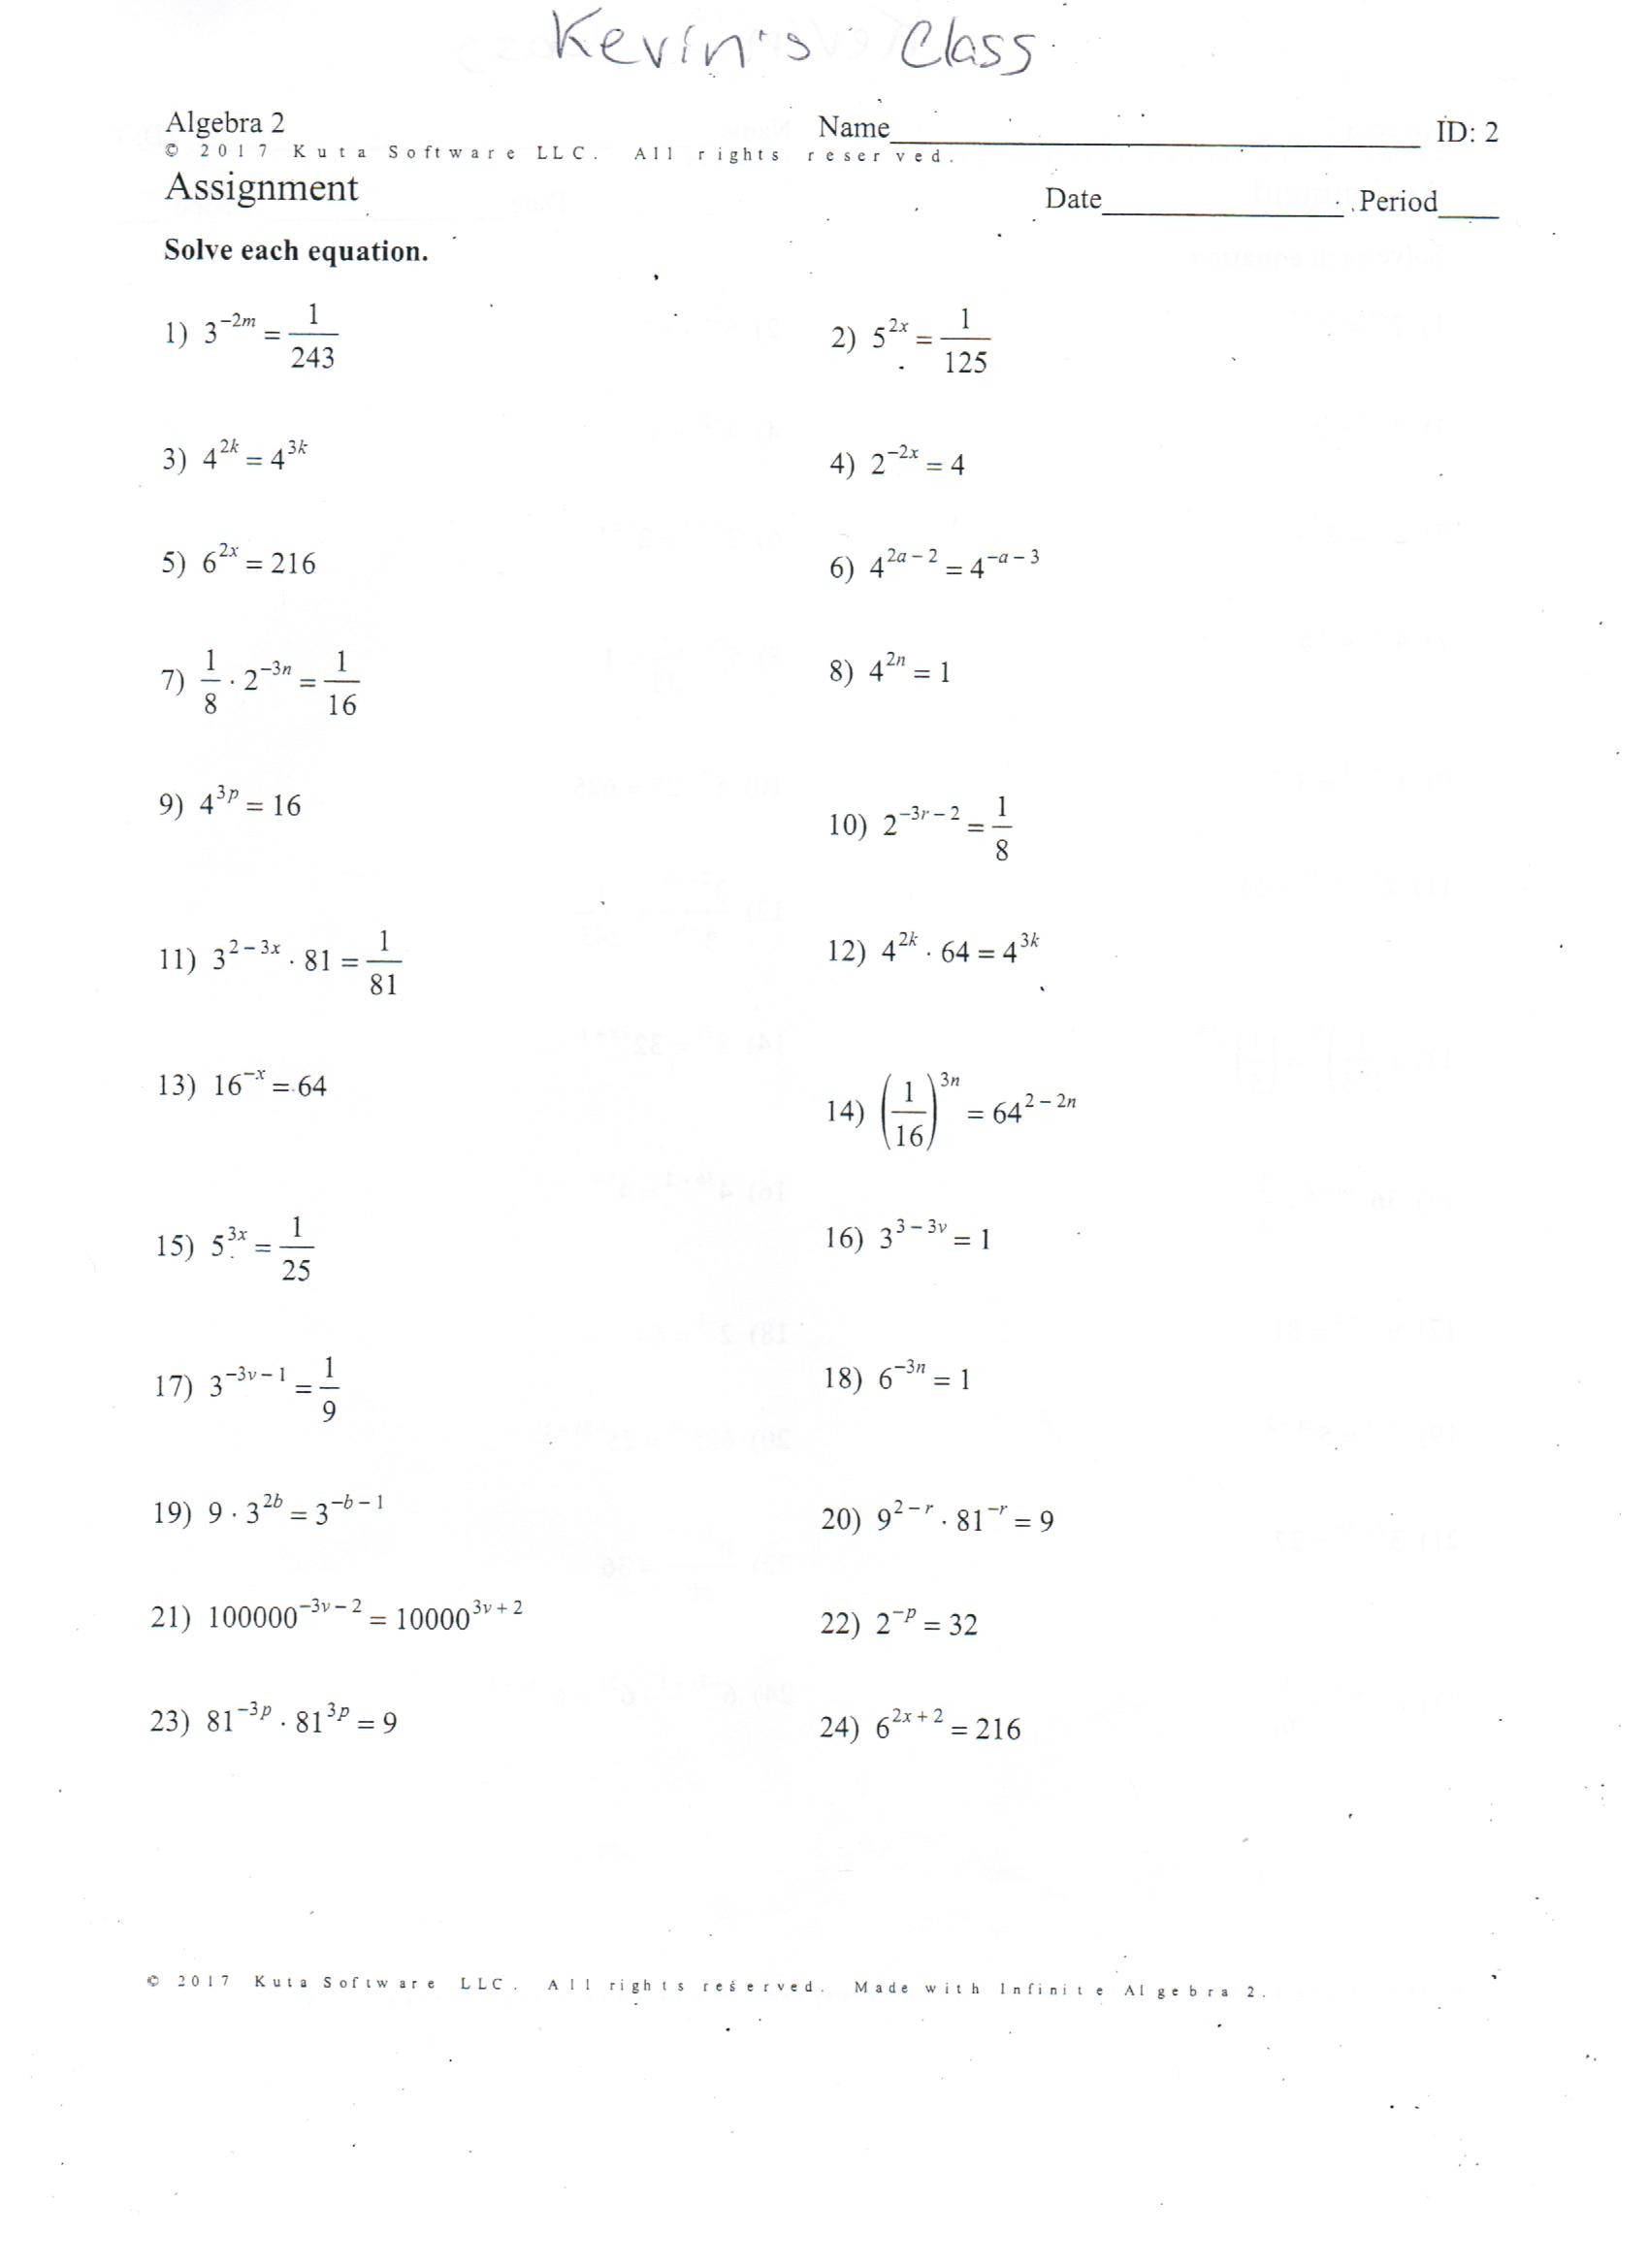 Factoring Quadratic Equations Worksheet 34 solving Quadratic Equations Worksheet with Answers